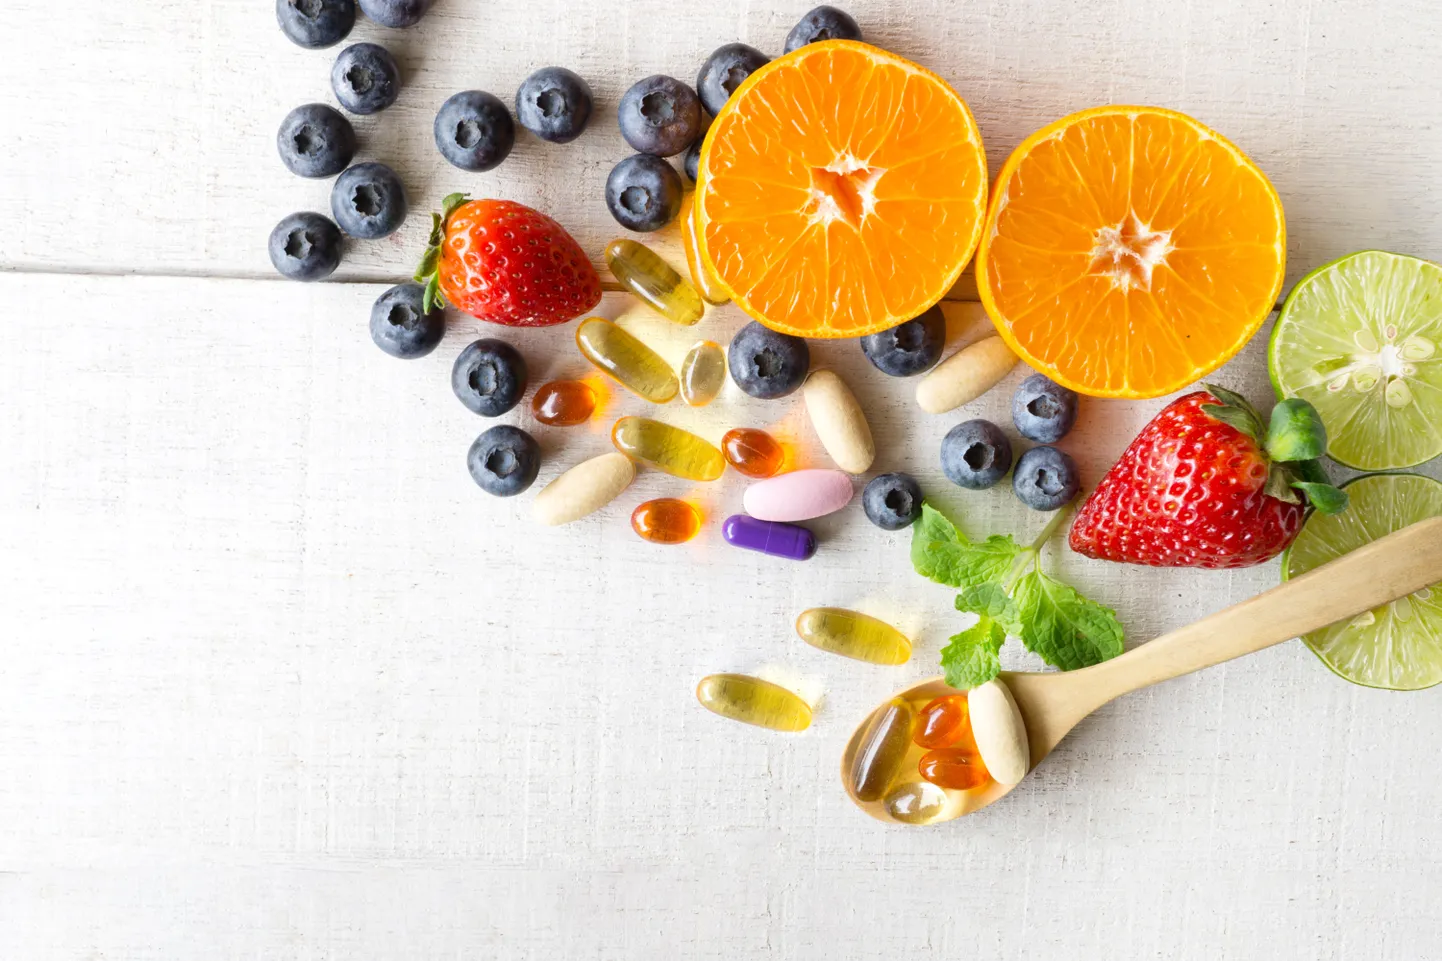 Vitamiine saab inimene tasakaalustatud ja mitmekesisest toidust. Teatud juhtudel aitavad puudujääke vältida toidulisandid.